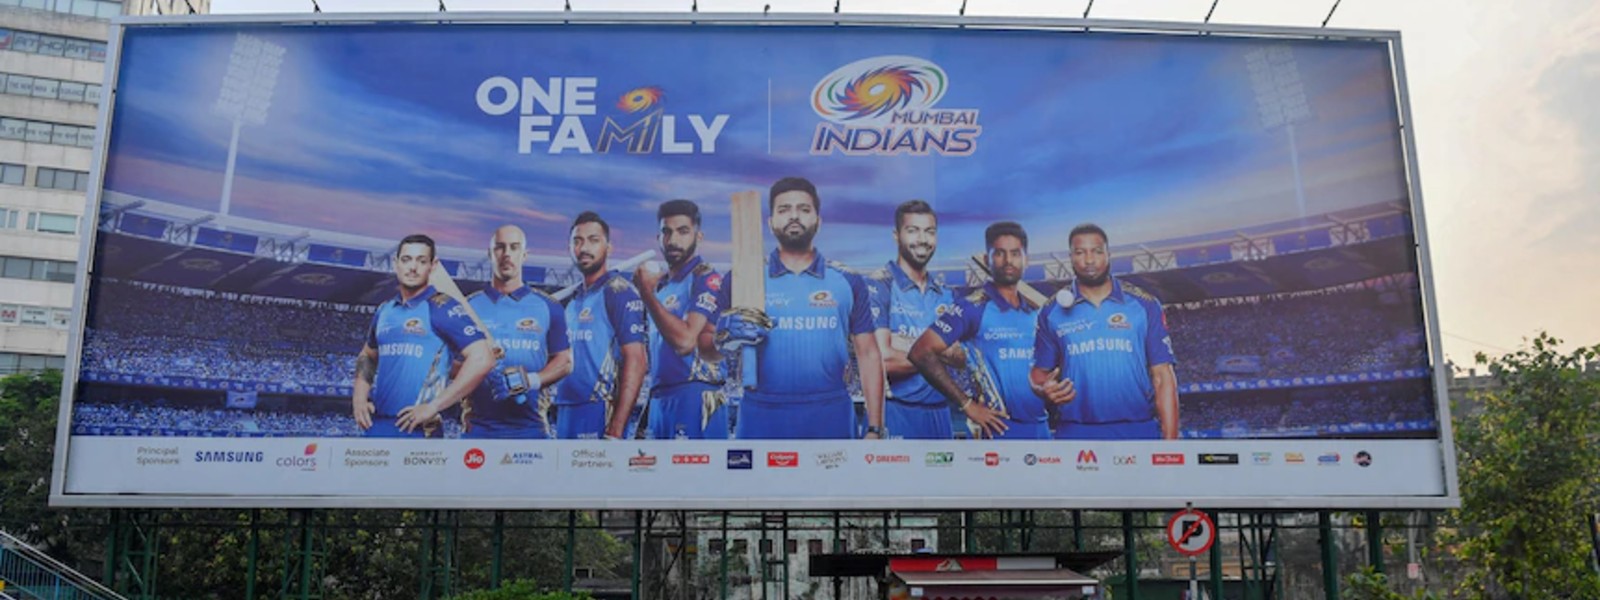 Sri Lanka to host IPL matches?